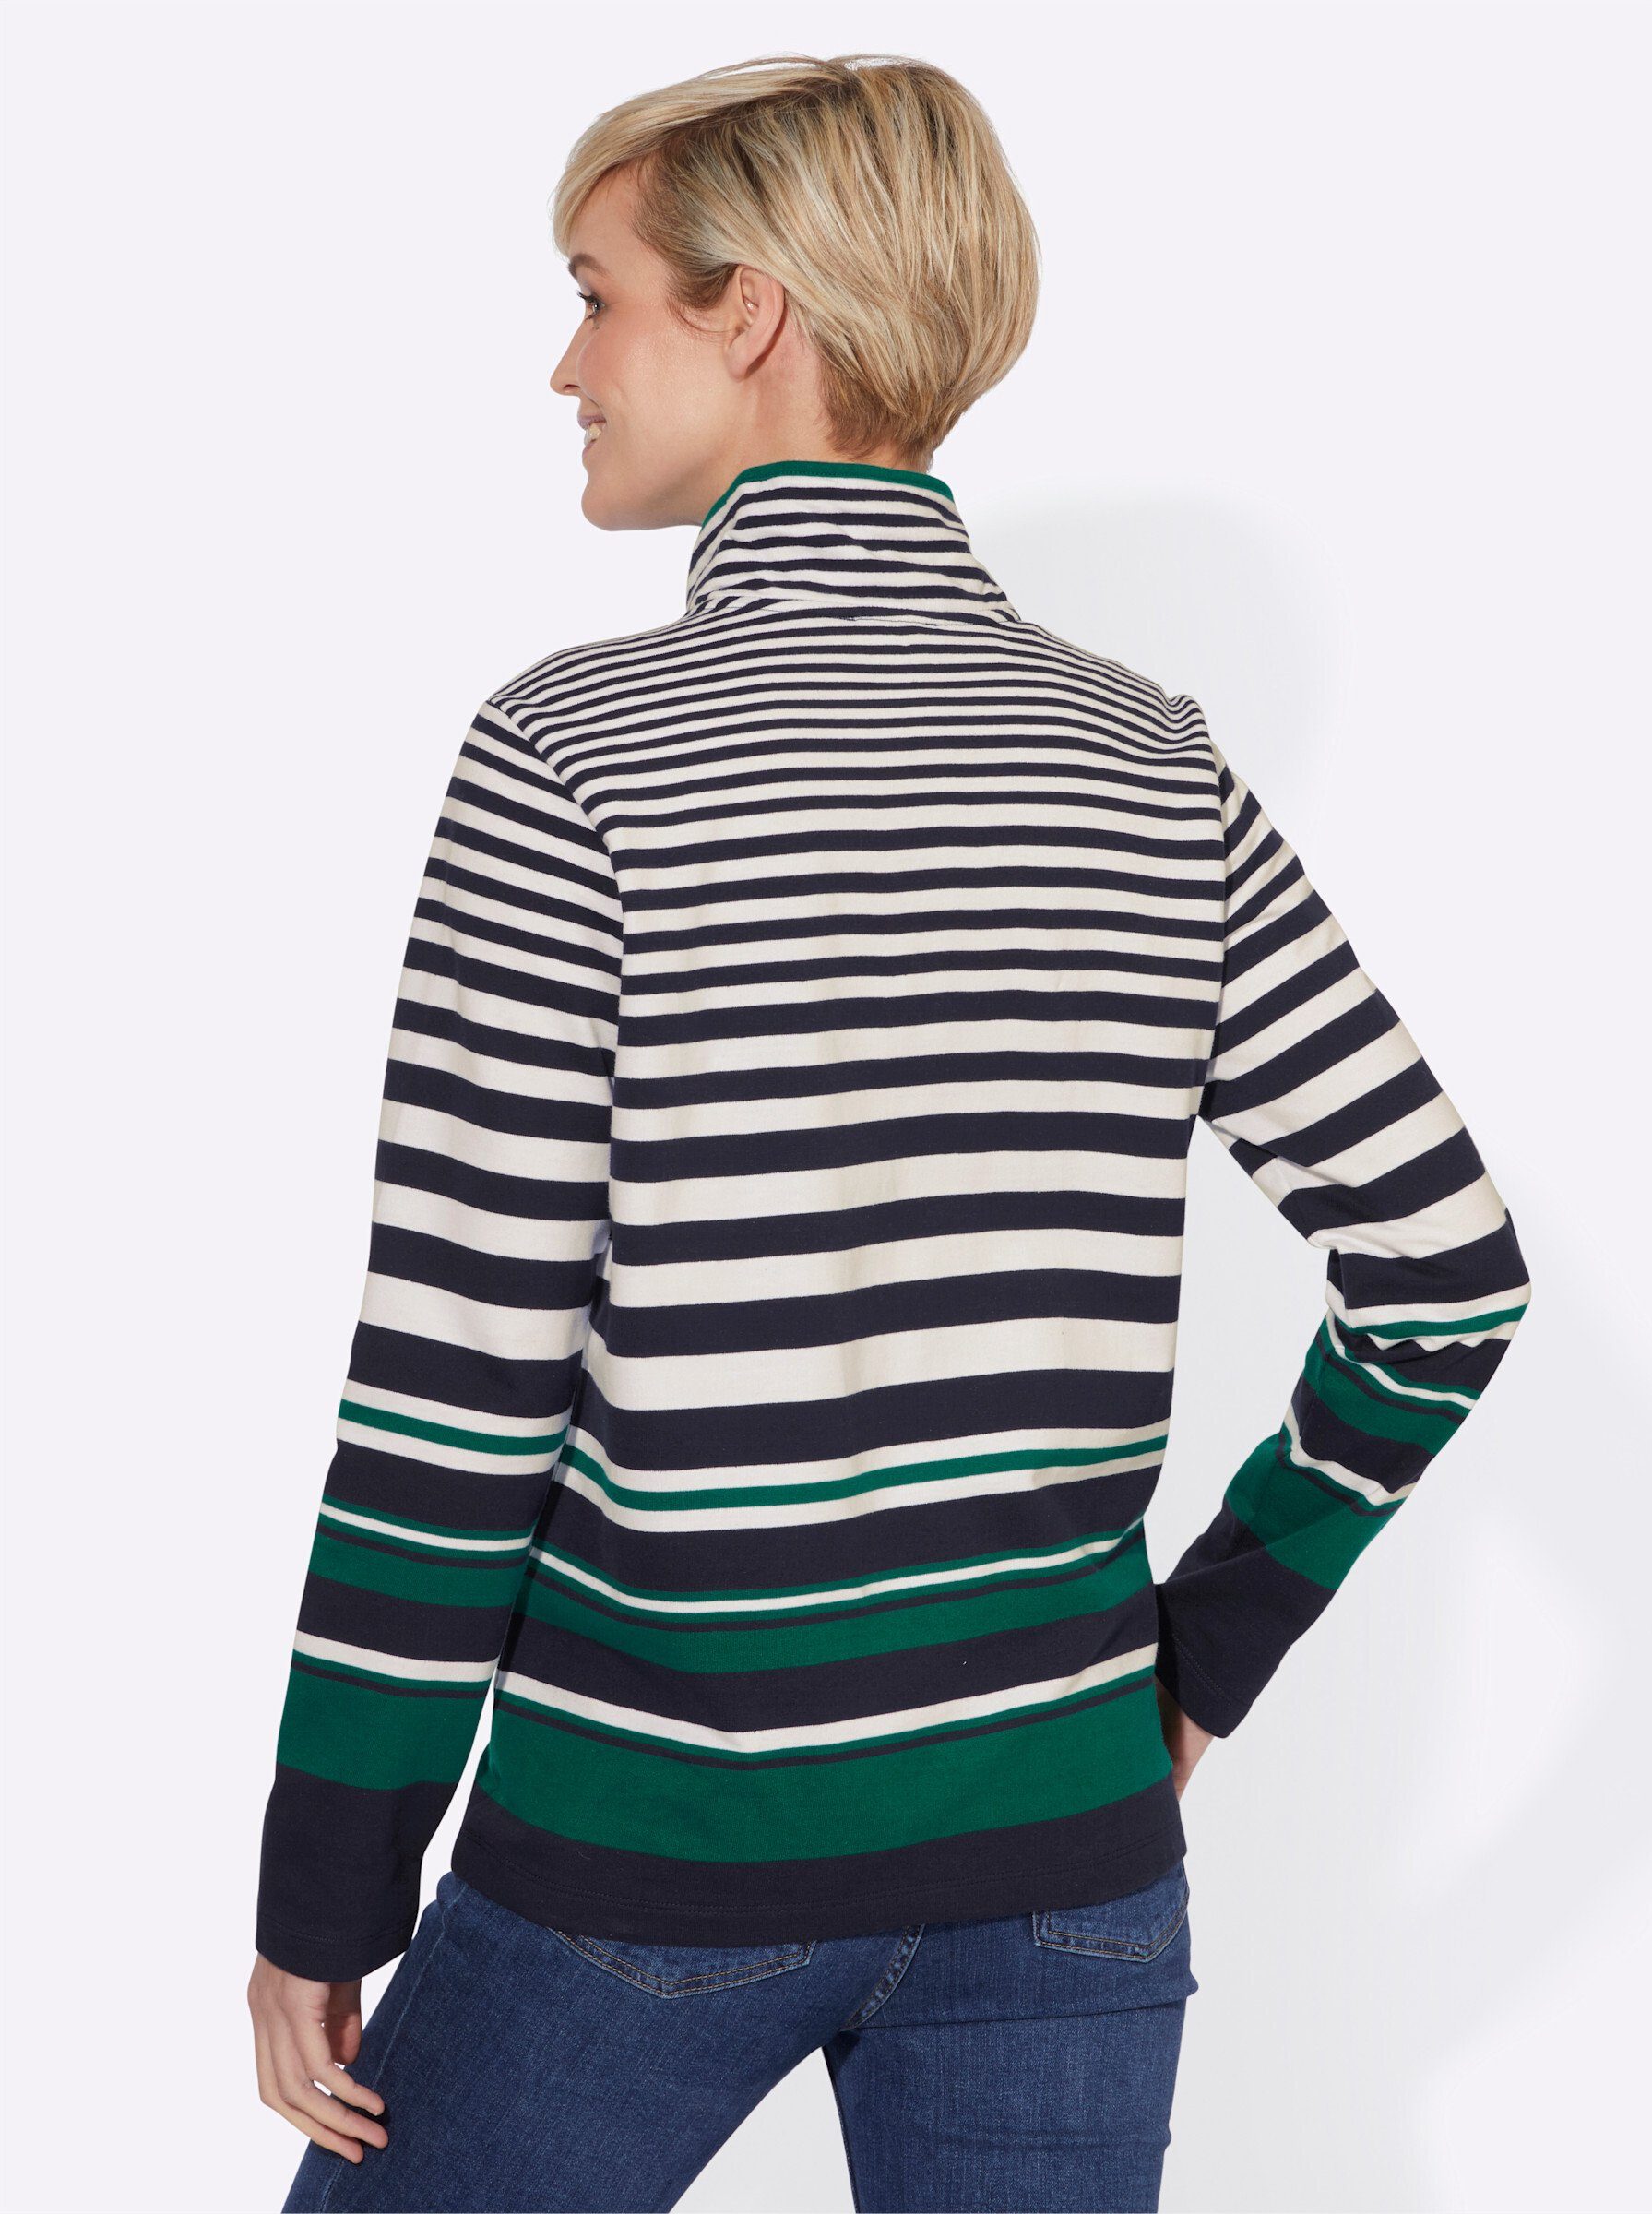 WEIDEN marine-dunkelgrün-gestreift Sweater WITT